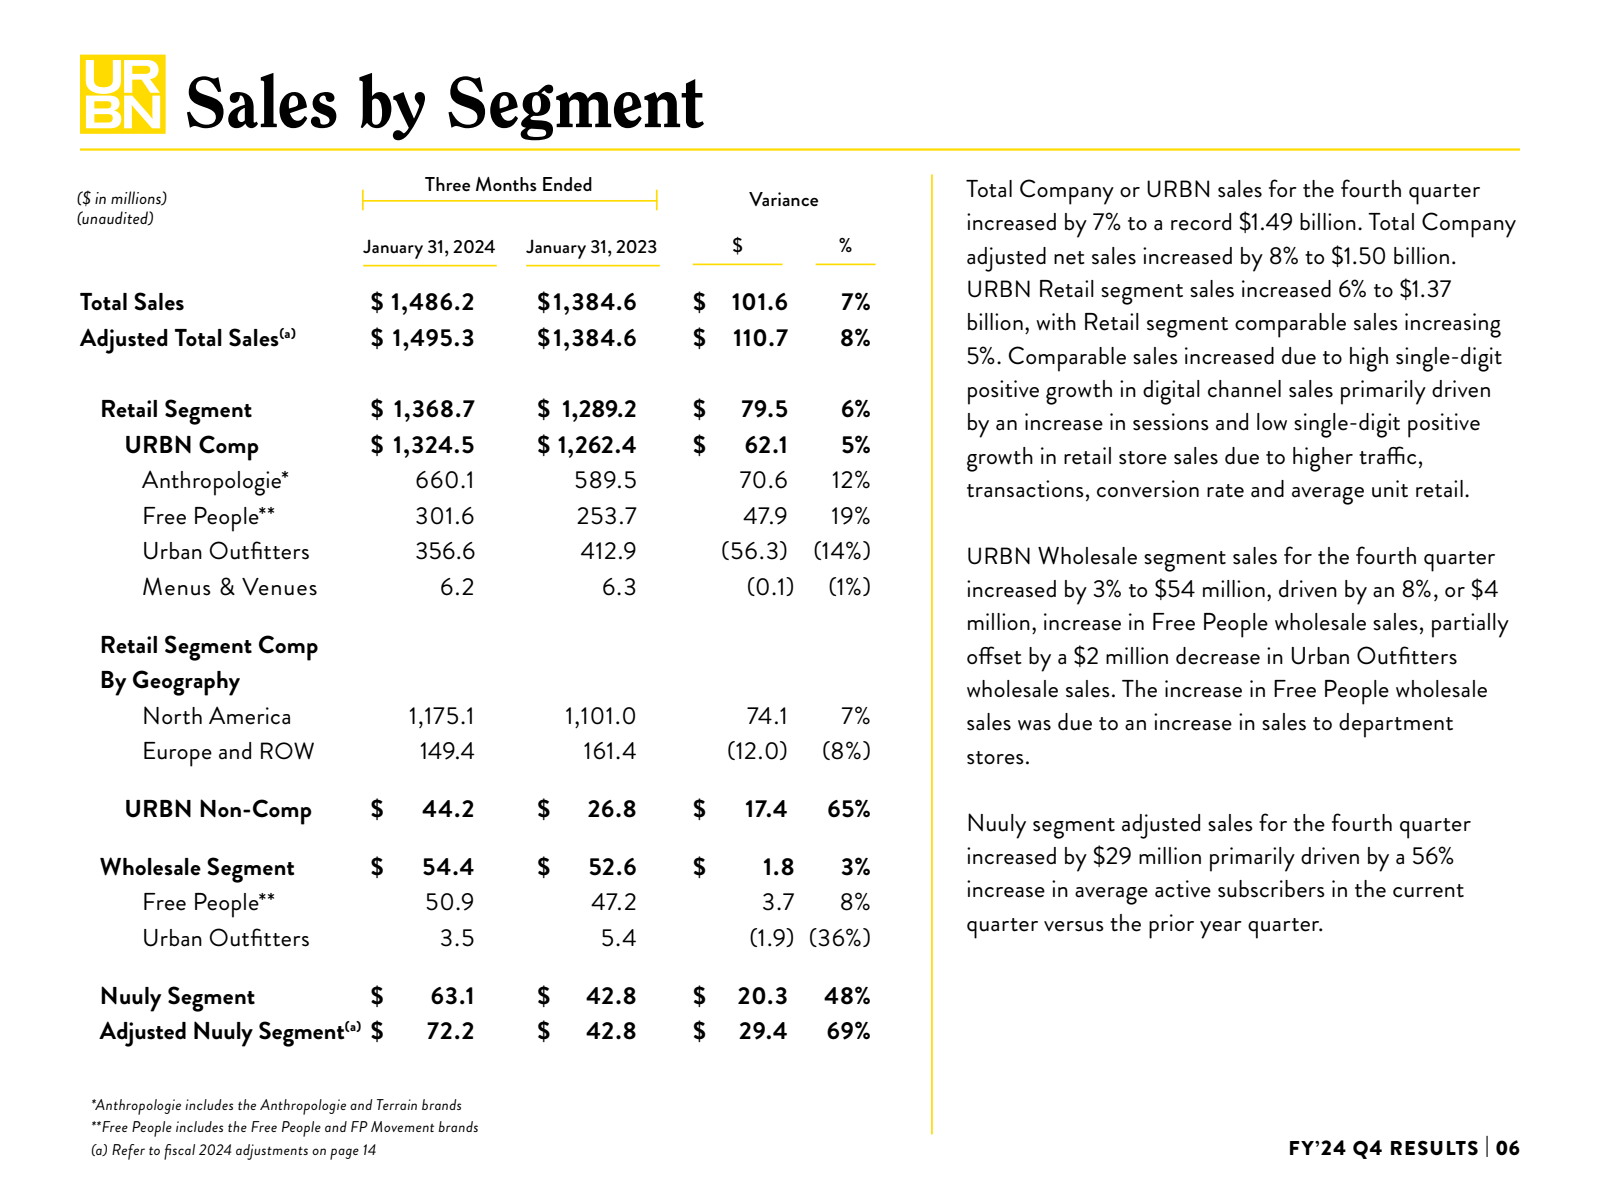 HR Sales by Segment 